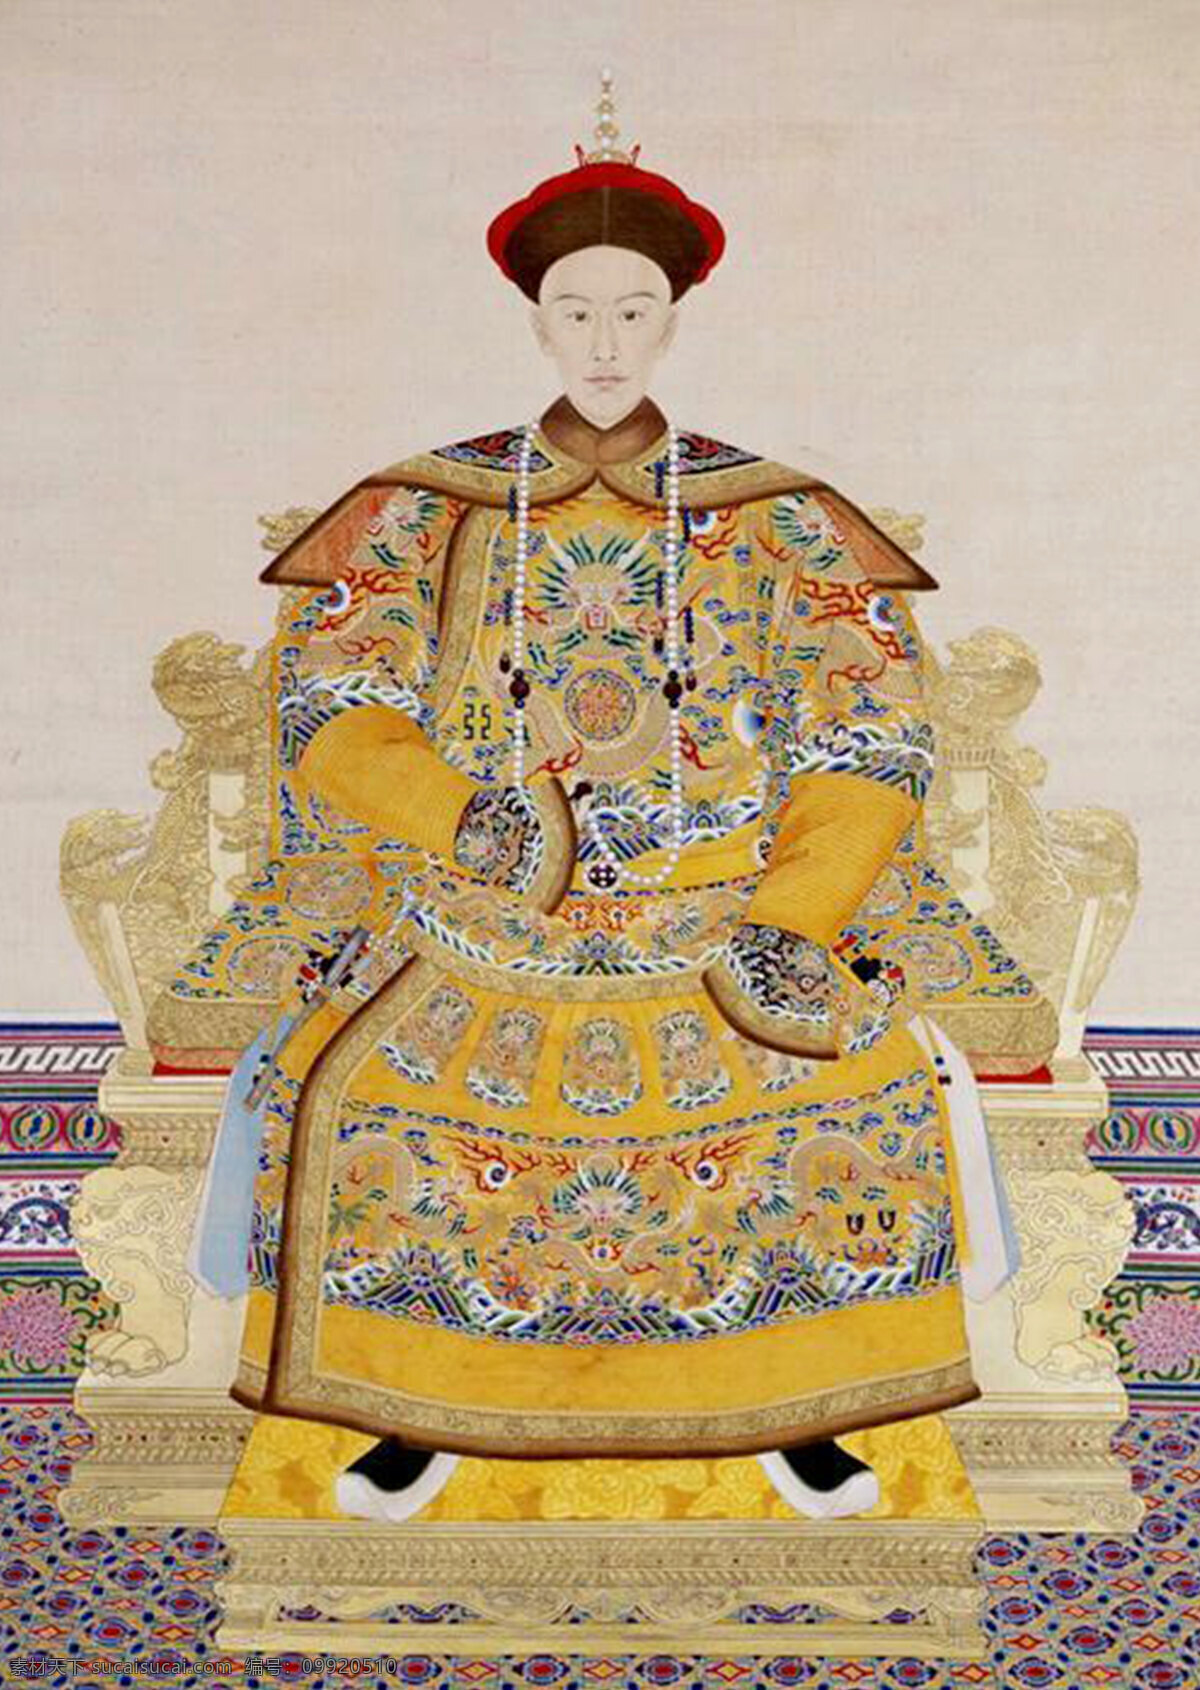 光绪 皇帝 画像 古代 国画 人物 肖像 中国文化 文化艺术